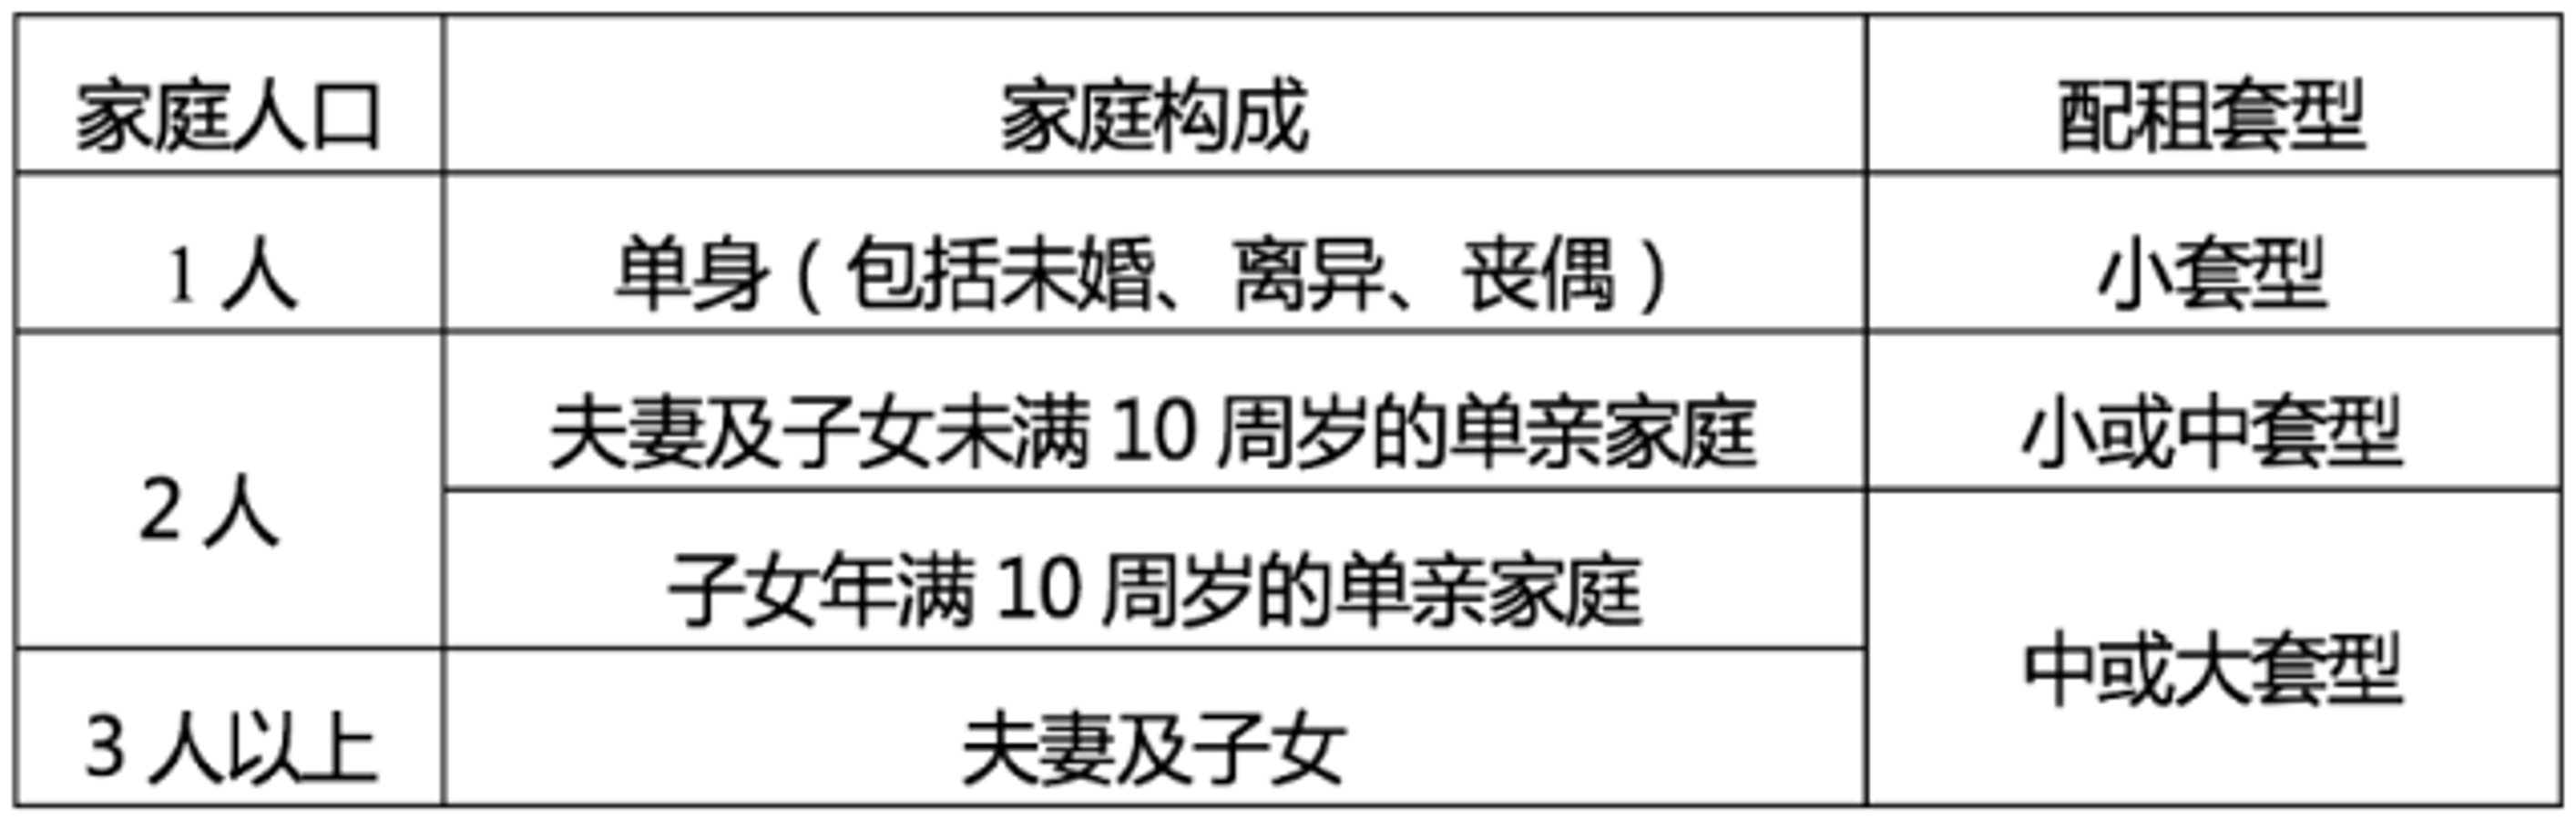 北京市保障性住房配租套型标准